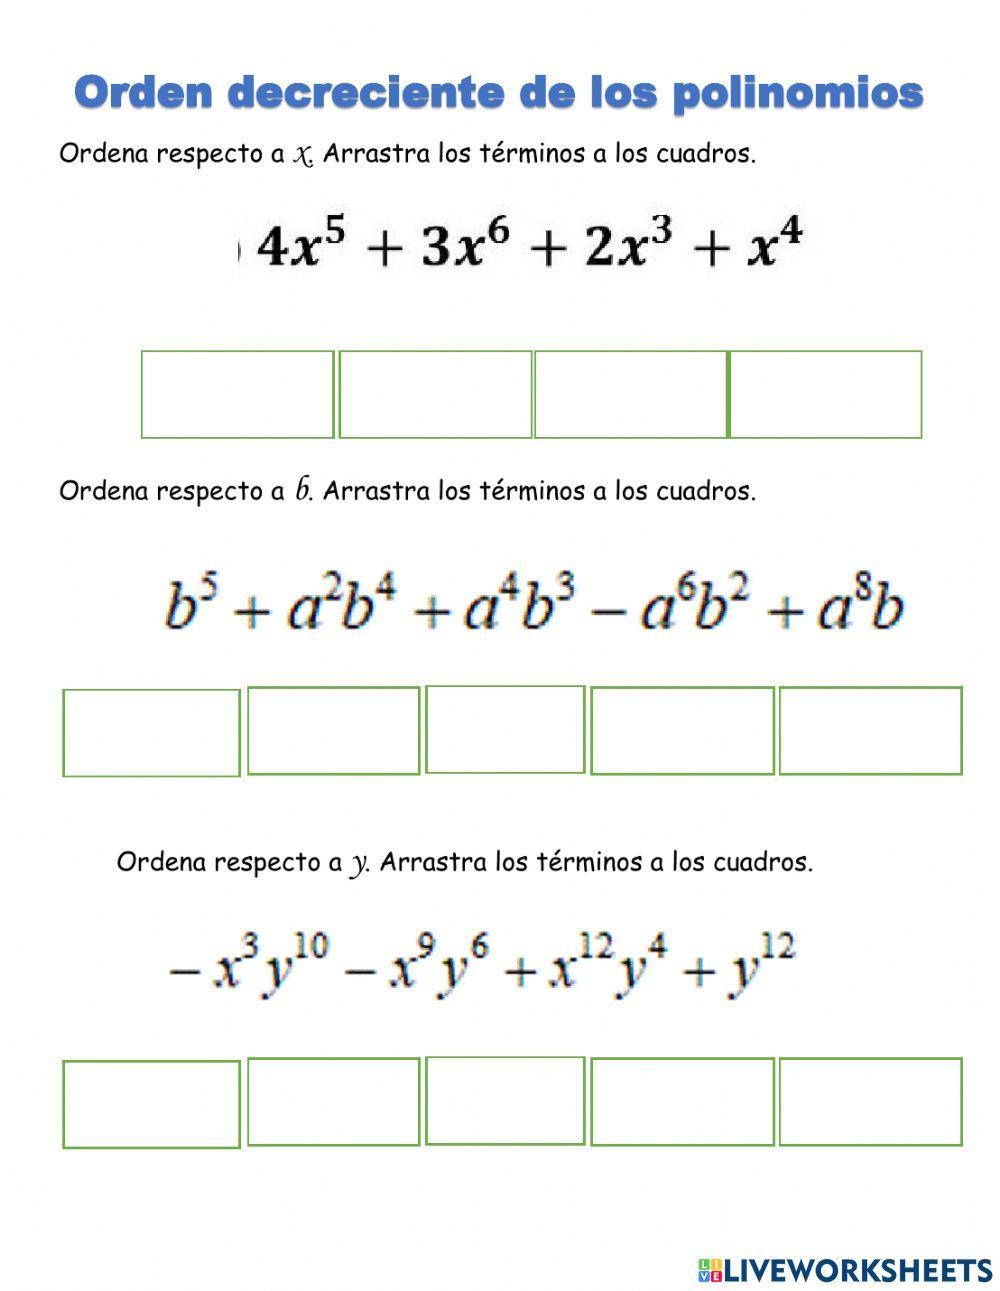 Orden decreciente de los polinomios